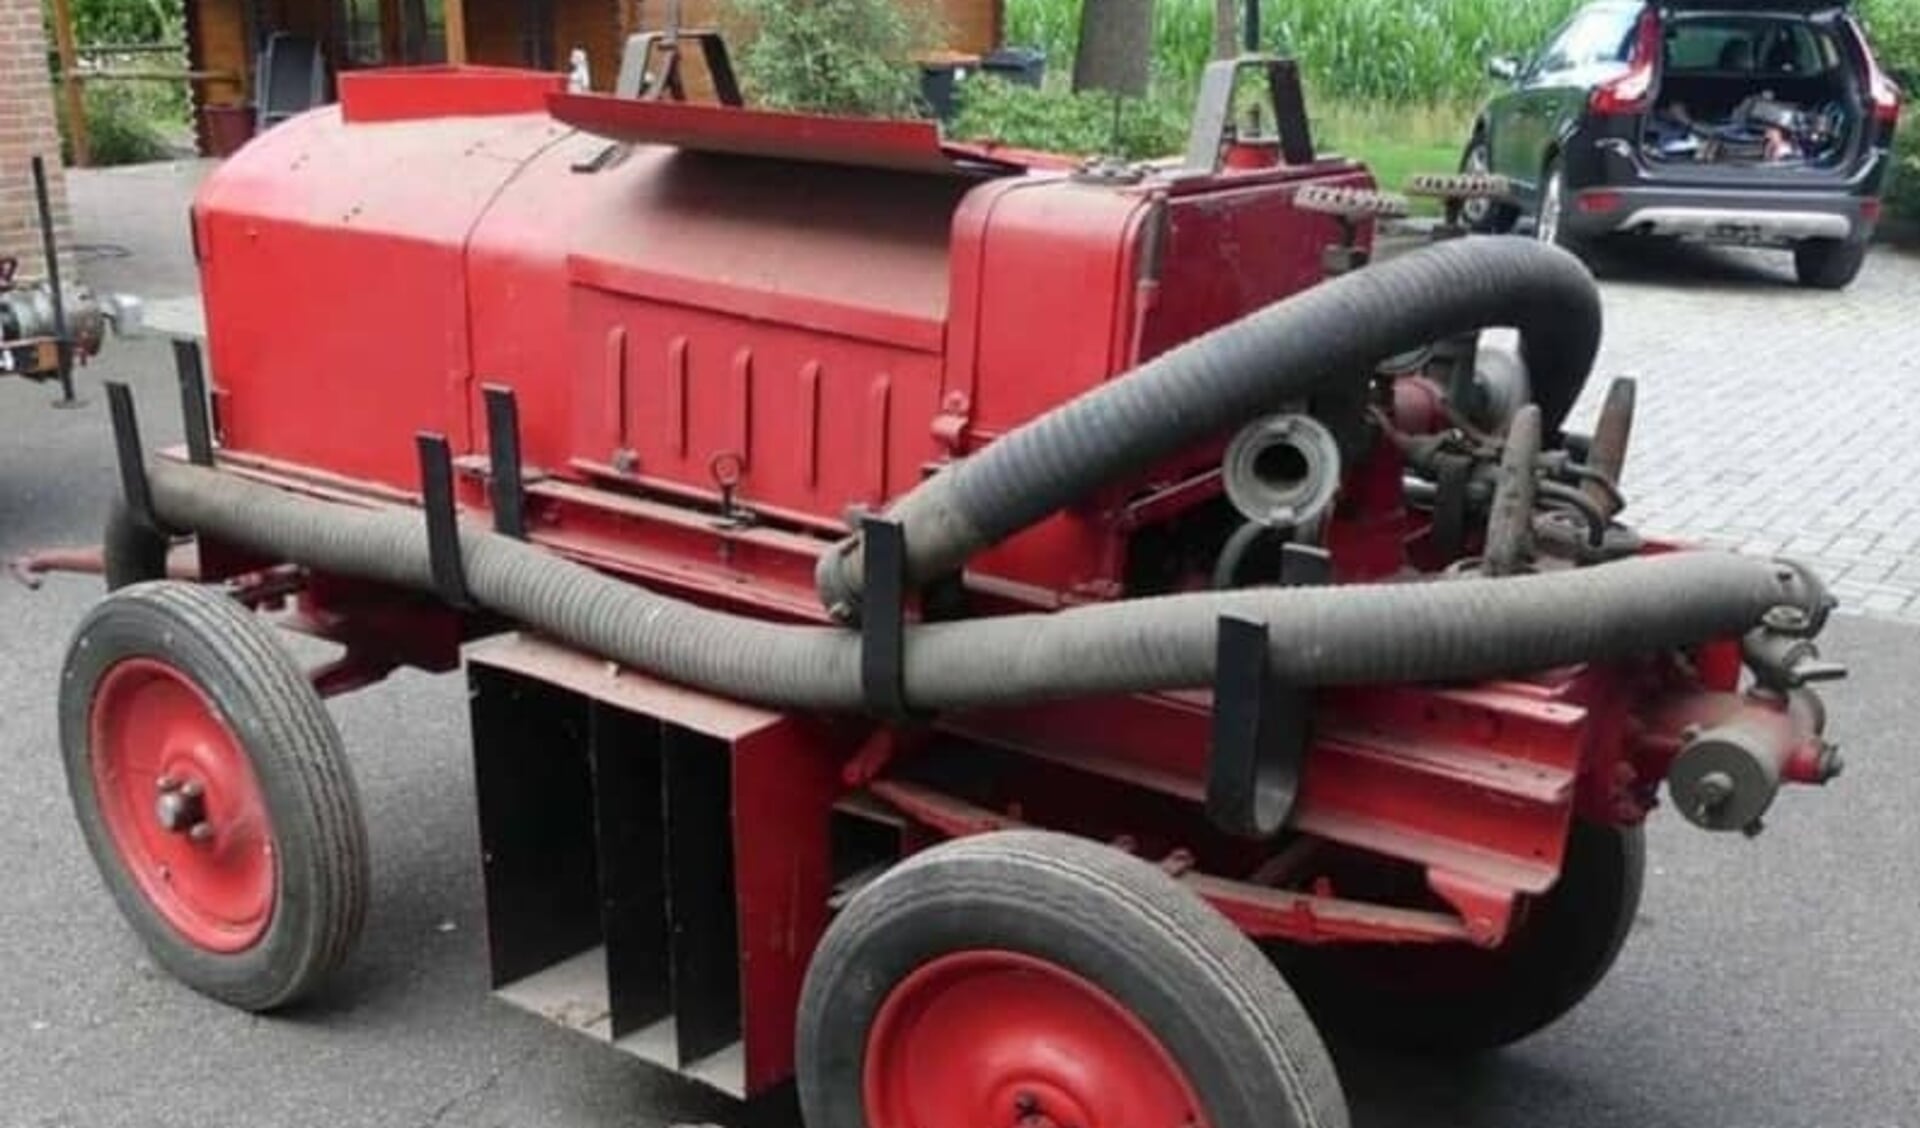 De motorspuit uit 1938 die is geschonken aan Brandweermuseum Hoogezand-Sappemeer.